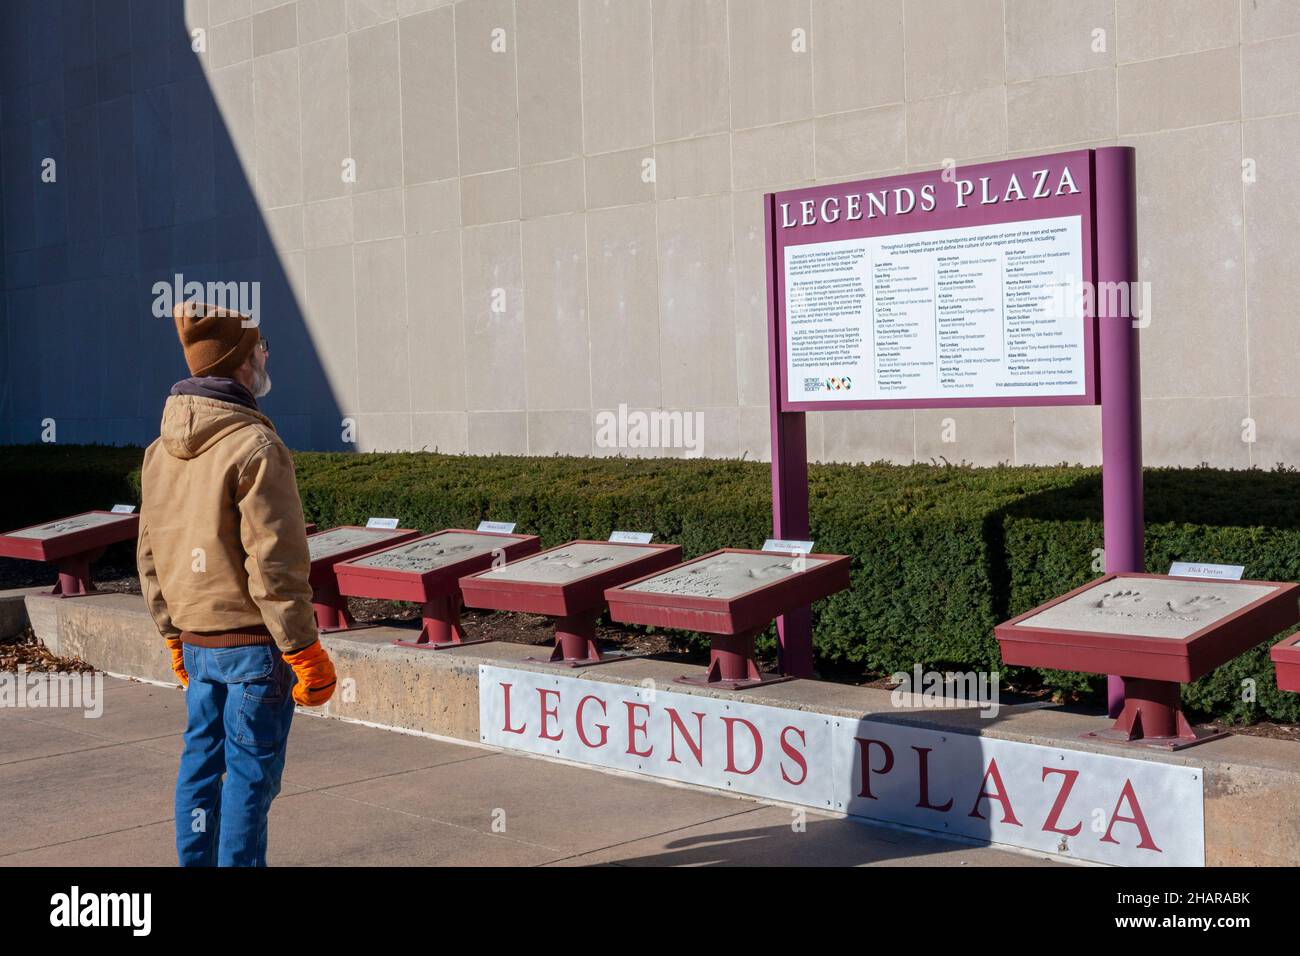 Detroit, Michigan - Legends Plaza im Detroit Historical Museum. Die plaza zeigt Handdrucke von Personen, die zur Kultur der Th beigetragen haben Stockfoto